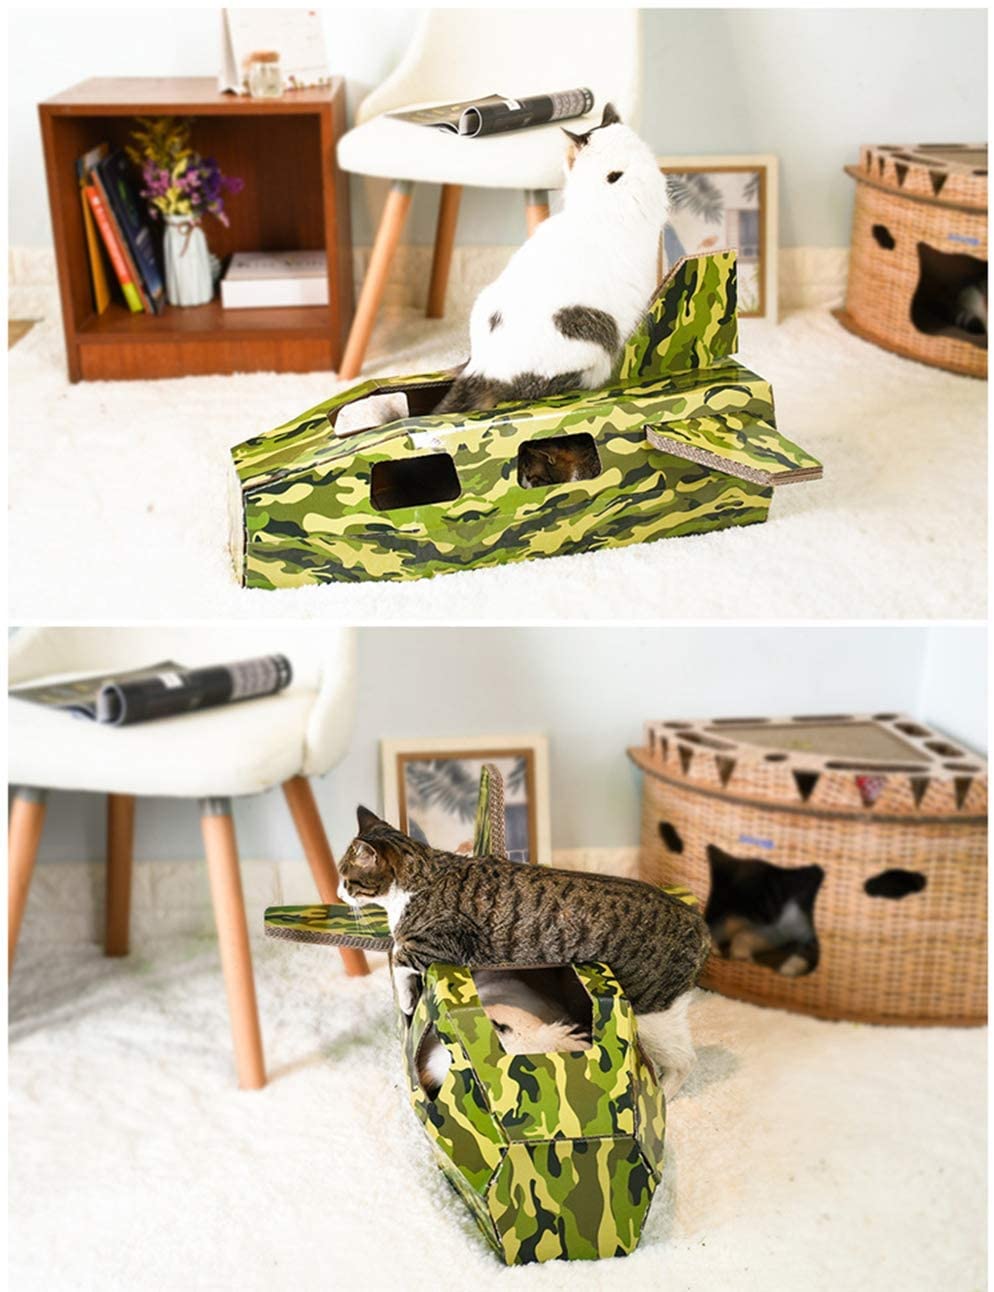  GXHGRASS Casa De Gato De Bricolaje, Modelo De Pelea De Papel Corrugado Cómodo Y Transpirable Gato Arañazo Gato Molienda Garra Juguete Nido De Gato, Importación Y Exportación Múltiple 